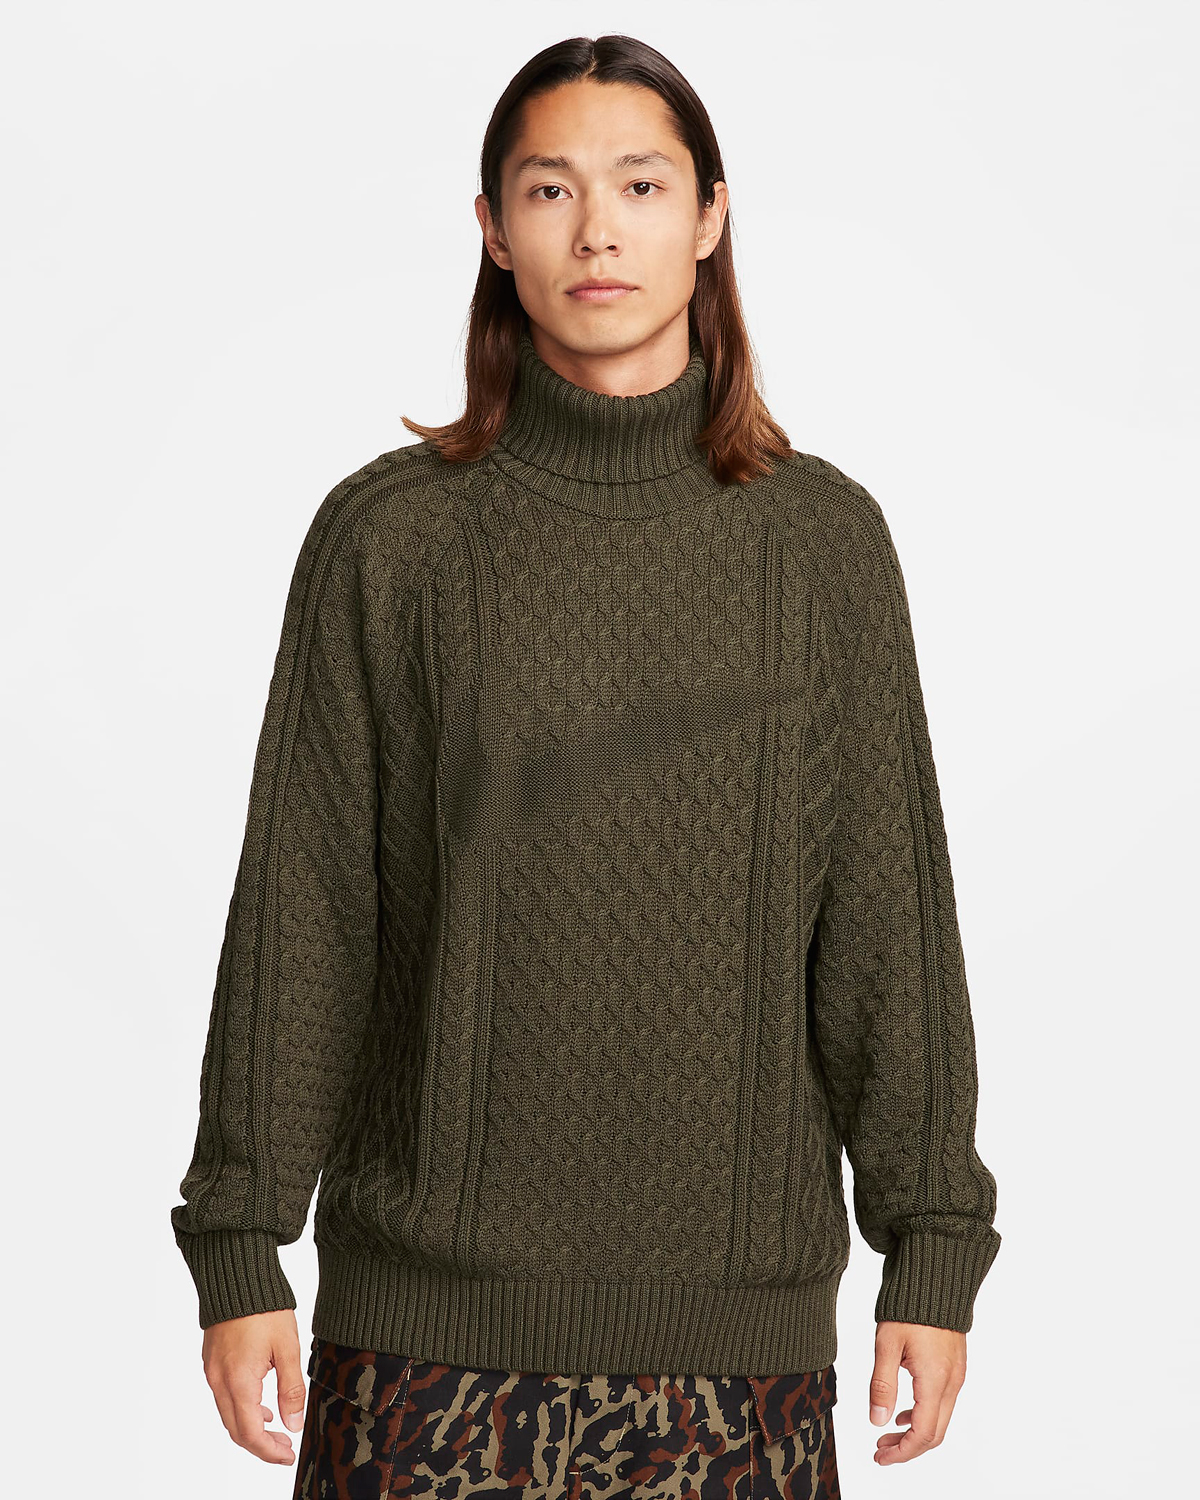 Nike Life Cable Knit Turtleneck Sweater Cargo Khaki 1